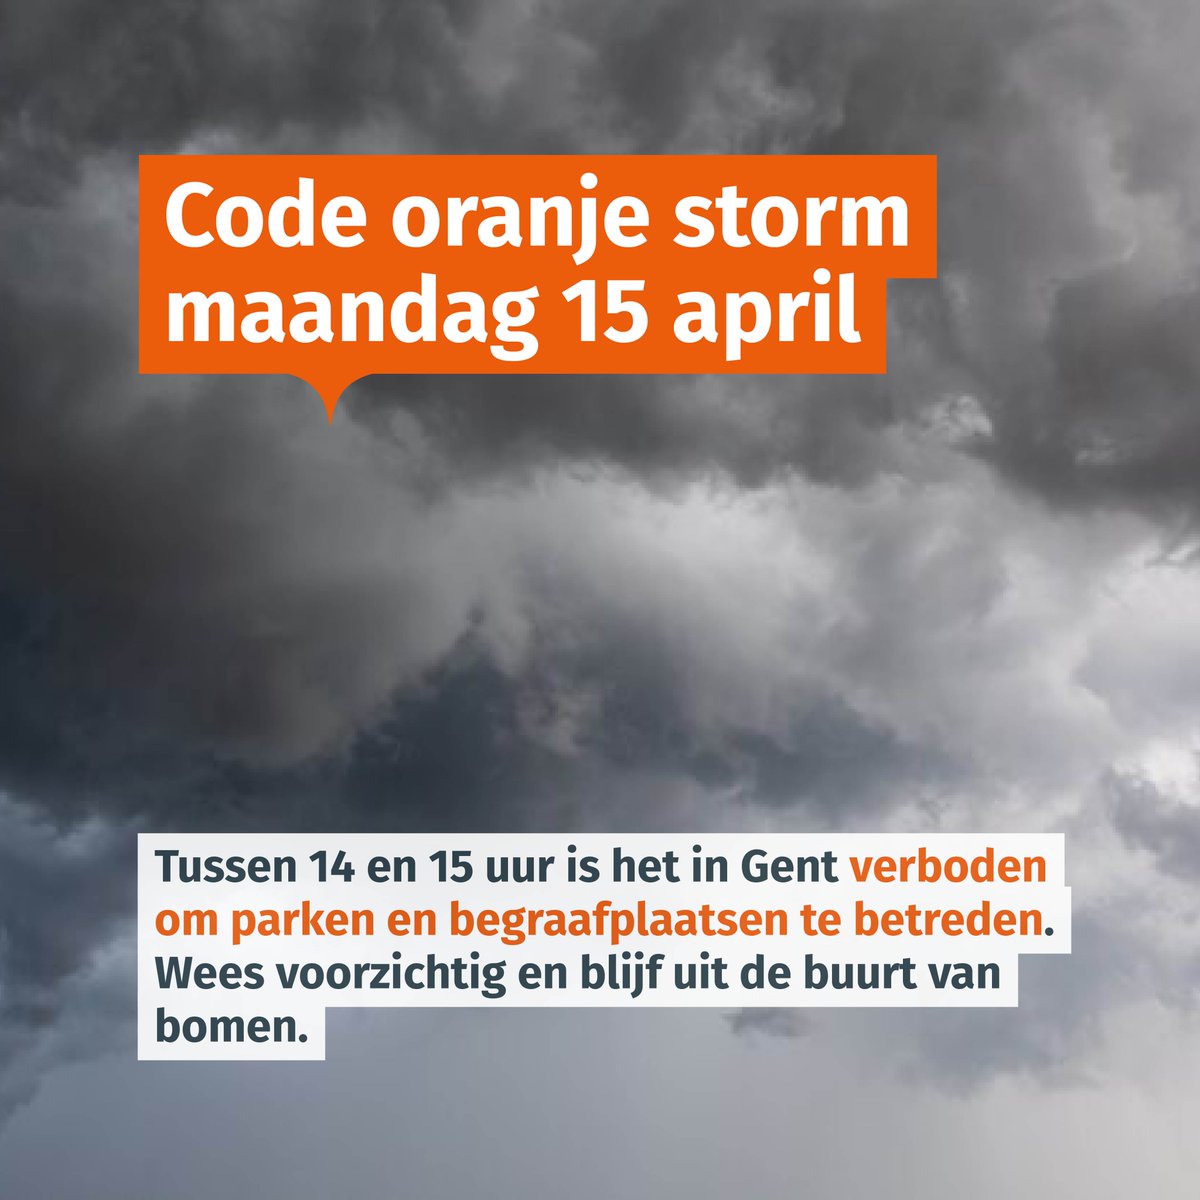 Het KMI heeft code oranje afgekondigd voor Oost-Vlaanderen. Er wordt veel wind voorspeld. In Gent is het tussen 14 en 15 uur verboden om parken, bossen en begraafplaatsen te betreden. #CodeOranje